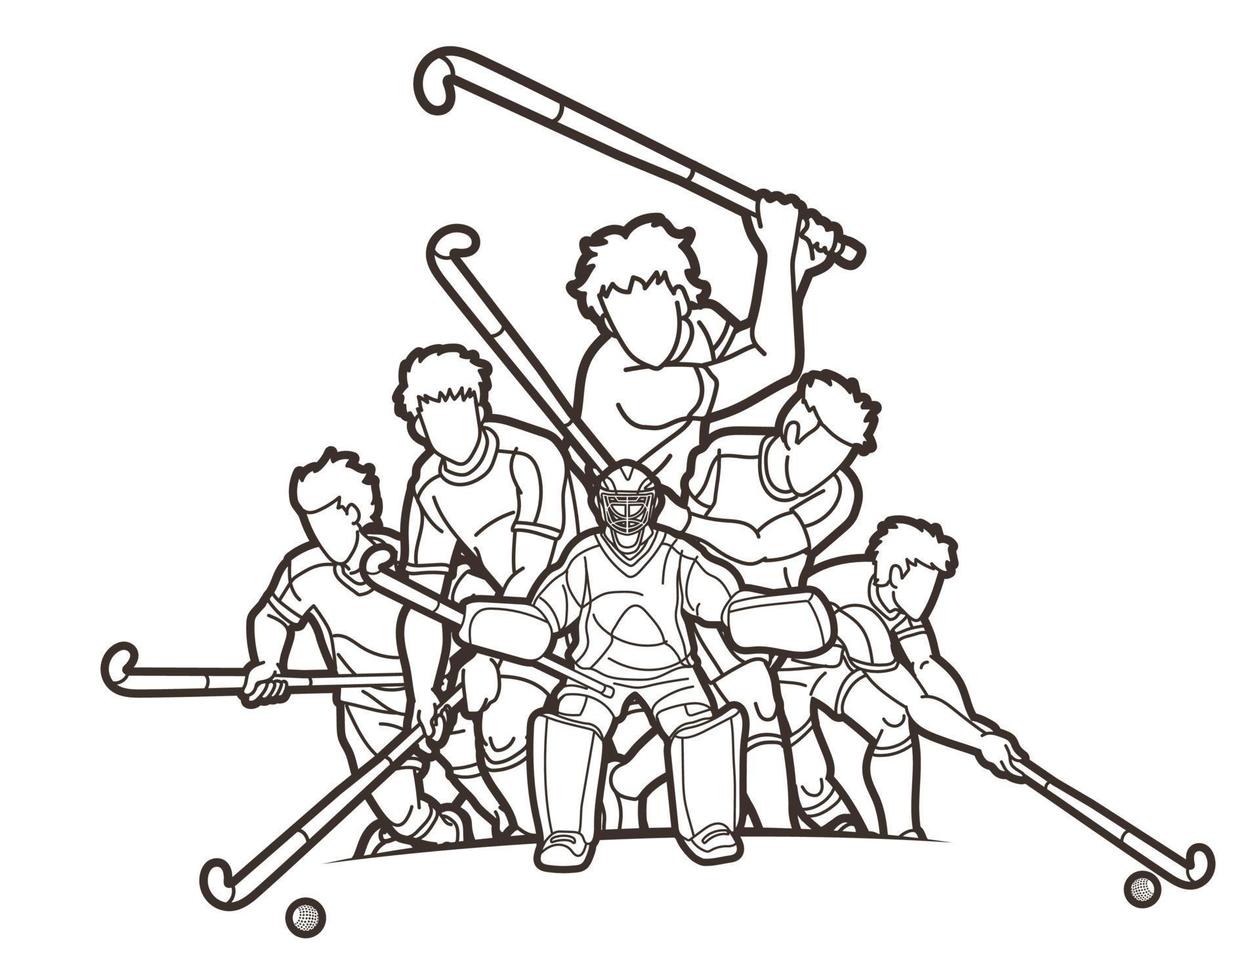 Esquema del equipo de hockey sobre césped deporte jugadores masculinos vector